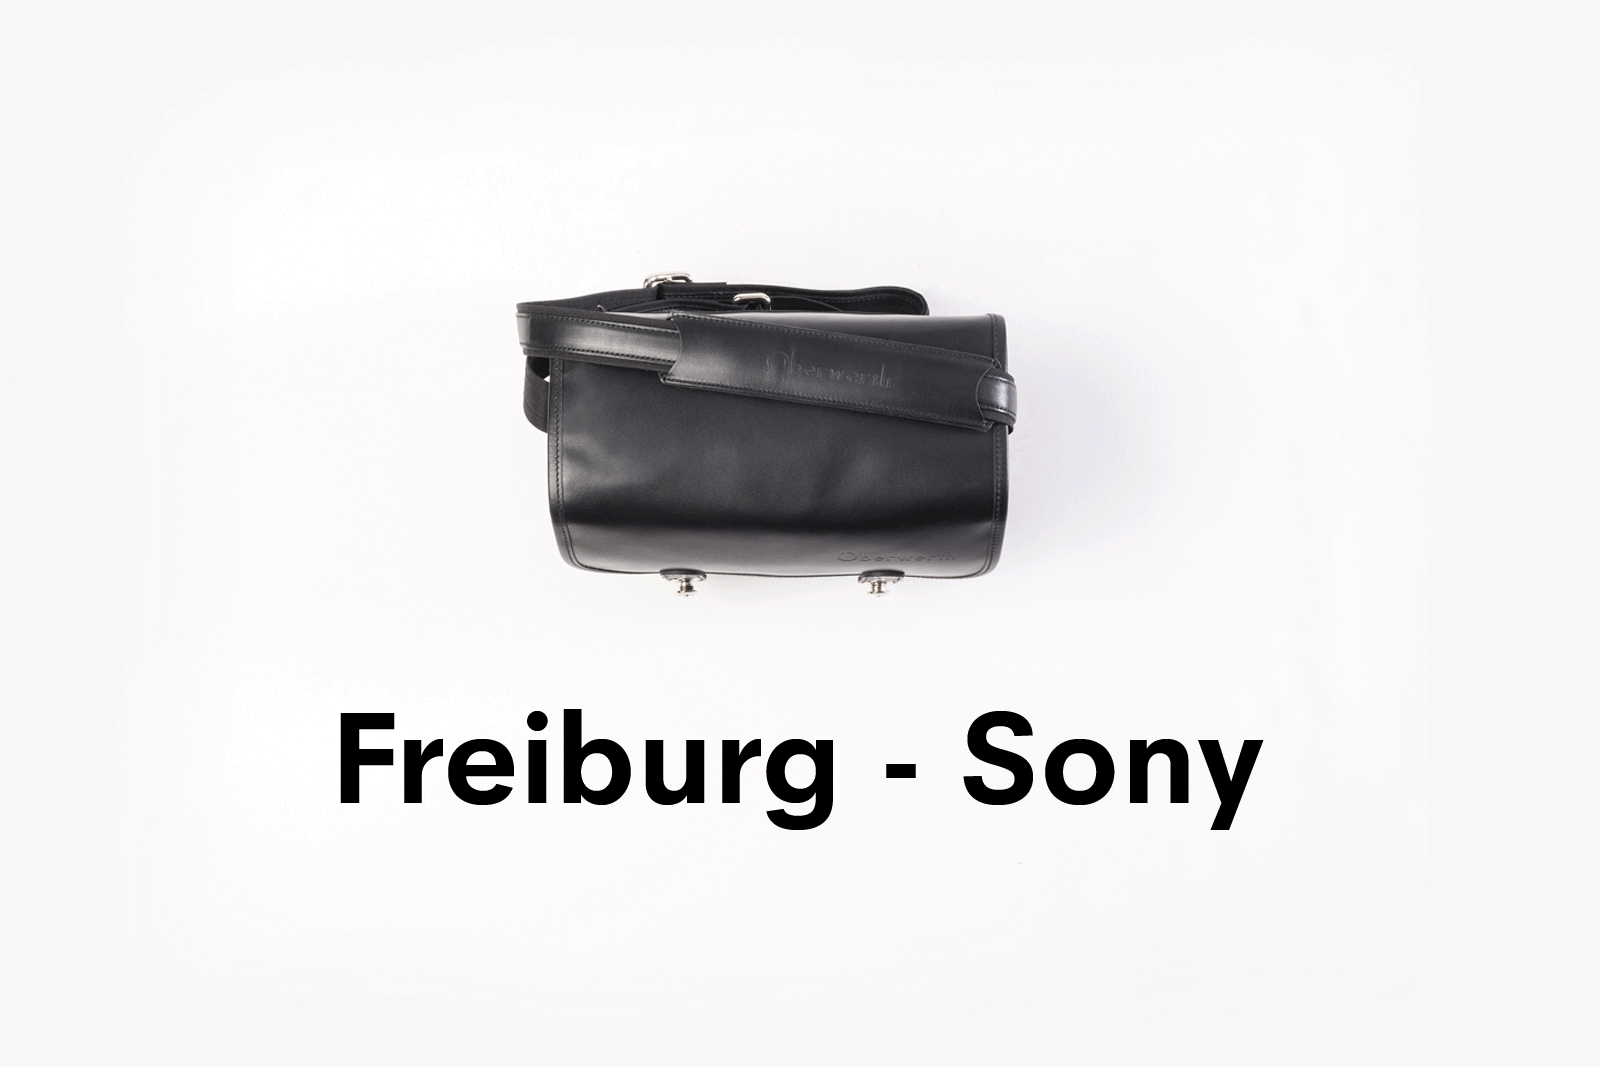 Camera bag FREIBURG full leather